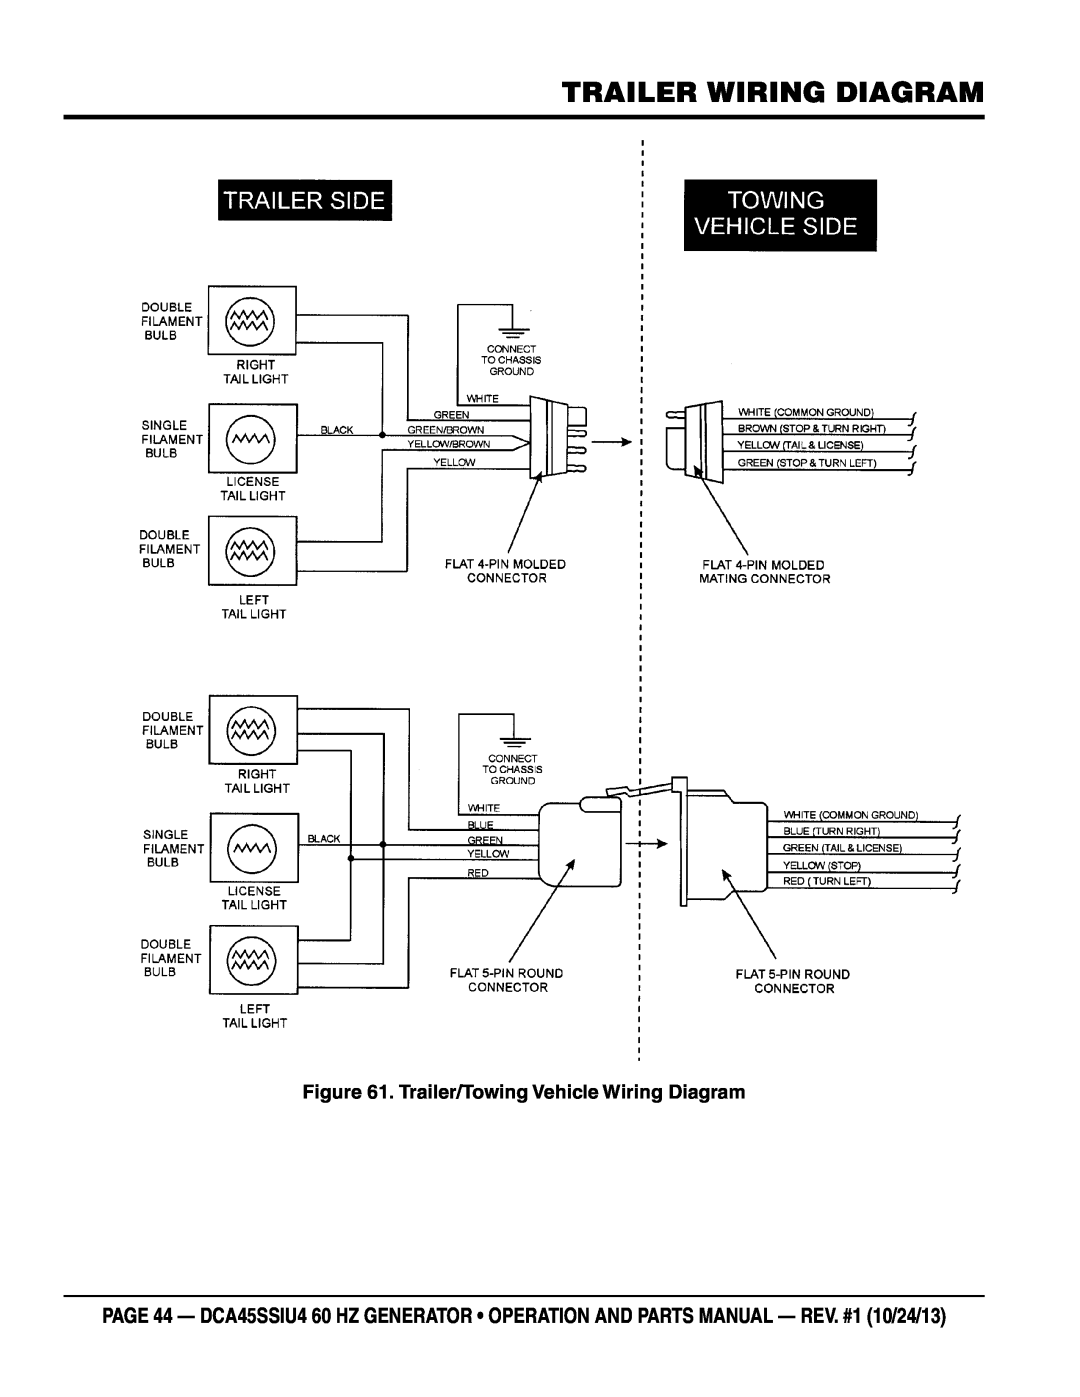 Multiquip dca45ssiu4 manual Trailer Wiring Diagram, Trailer/Towing Vehicle Wiring Diagram 